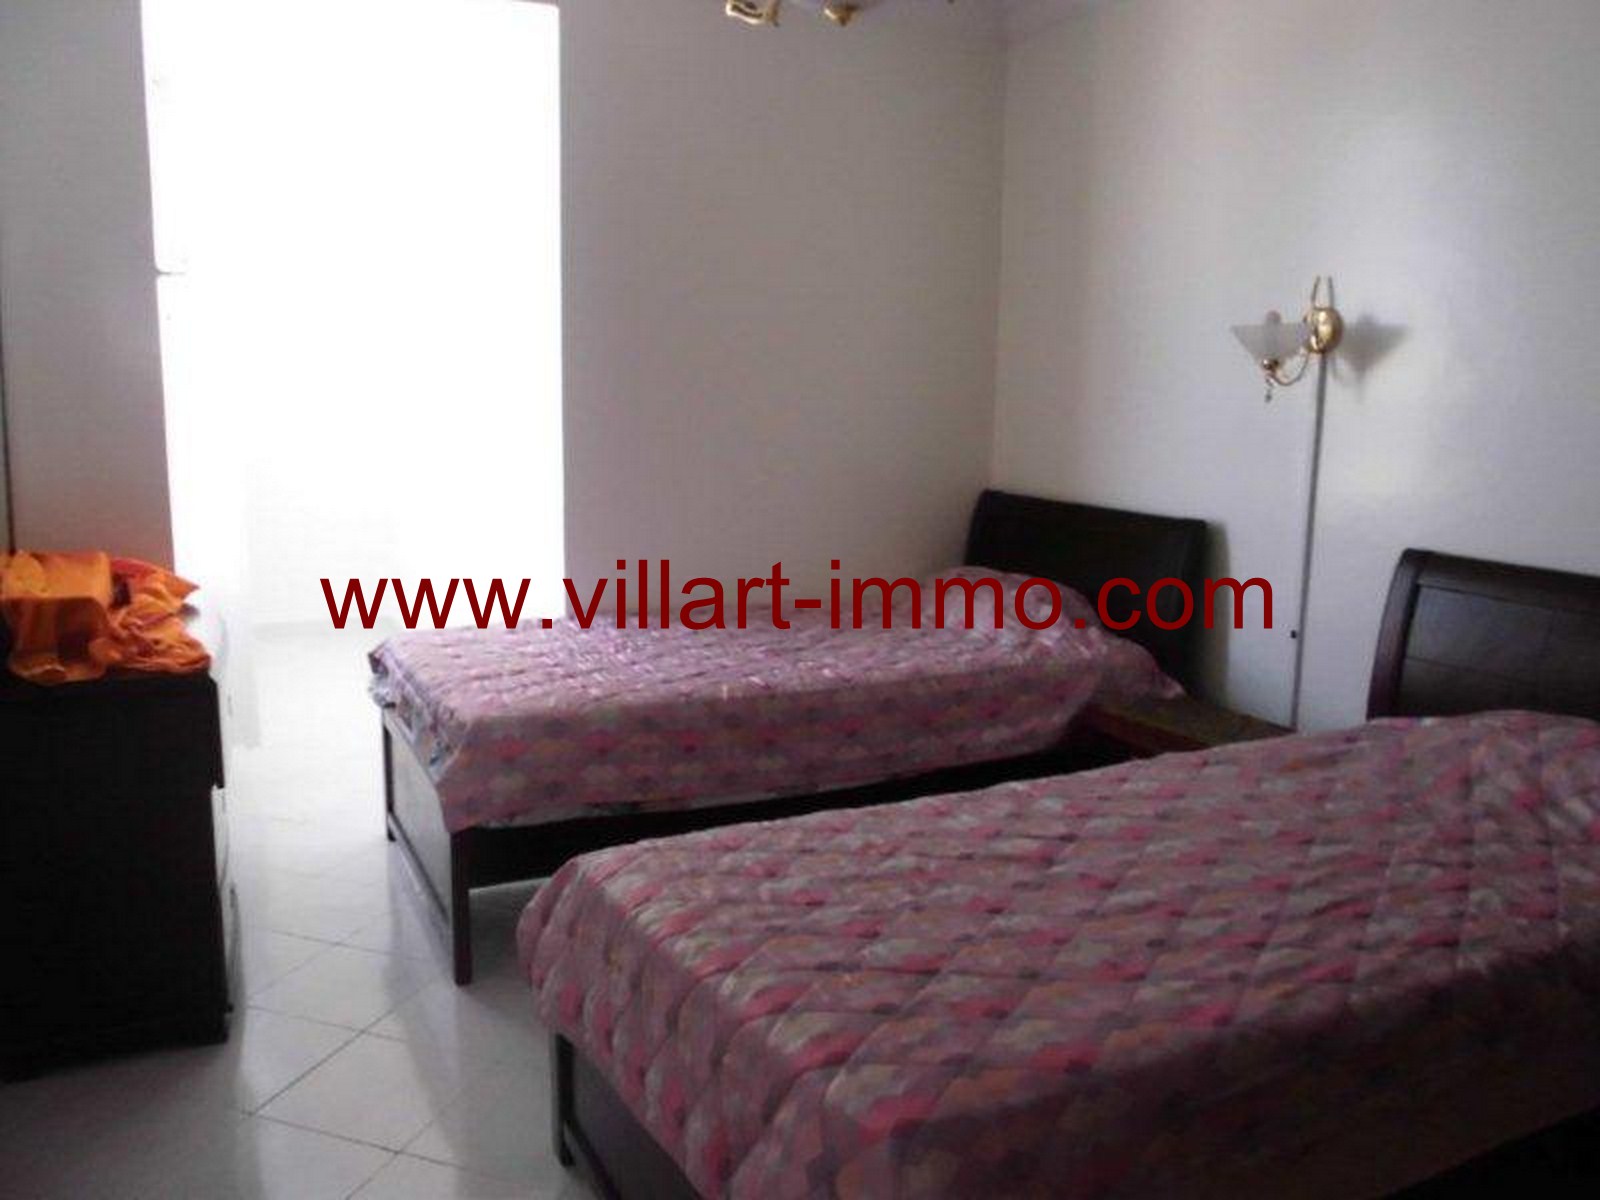 2-Vente -Appartement-Tanger-Maroc-Centre-De-Ville-Chambre-VA134-Villartimmo